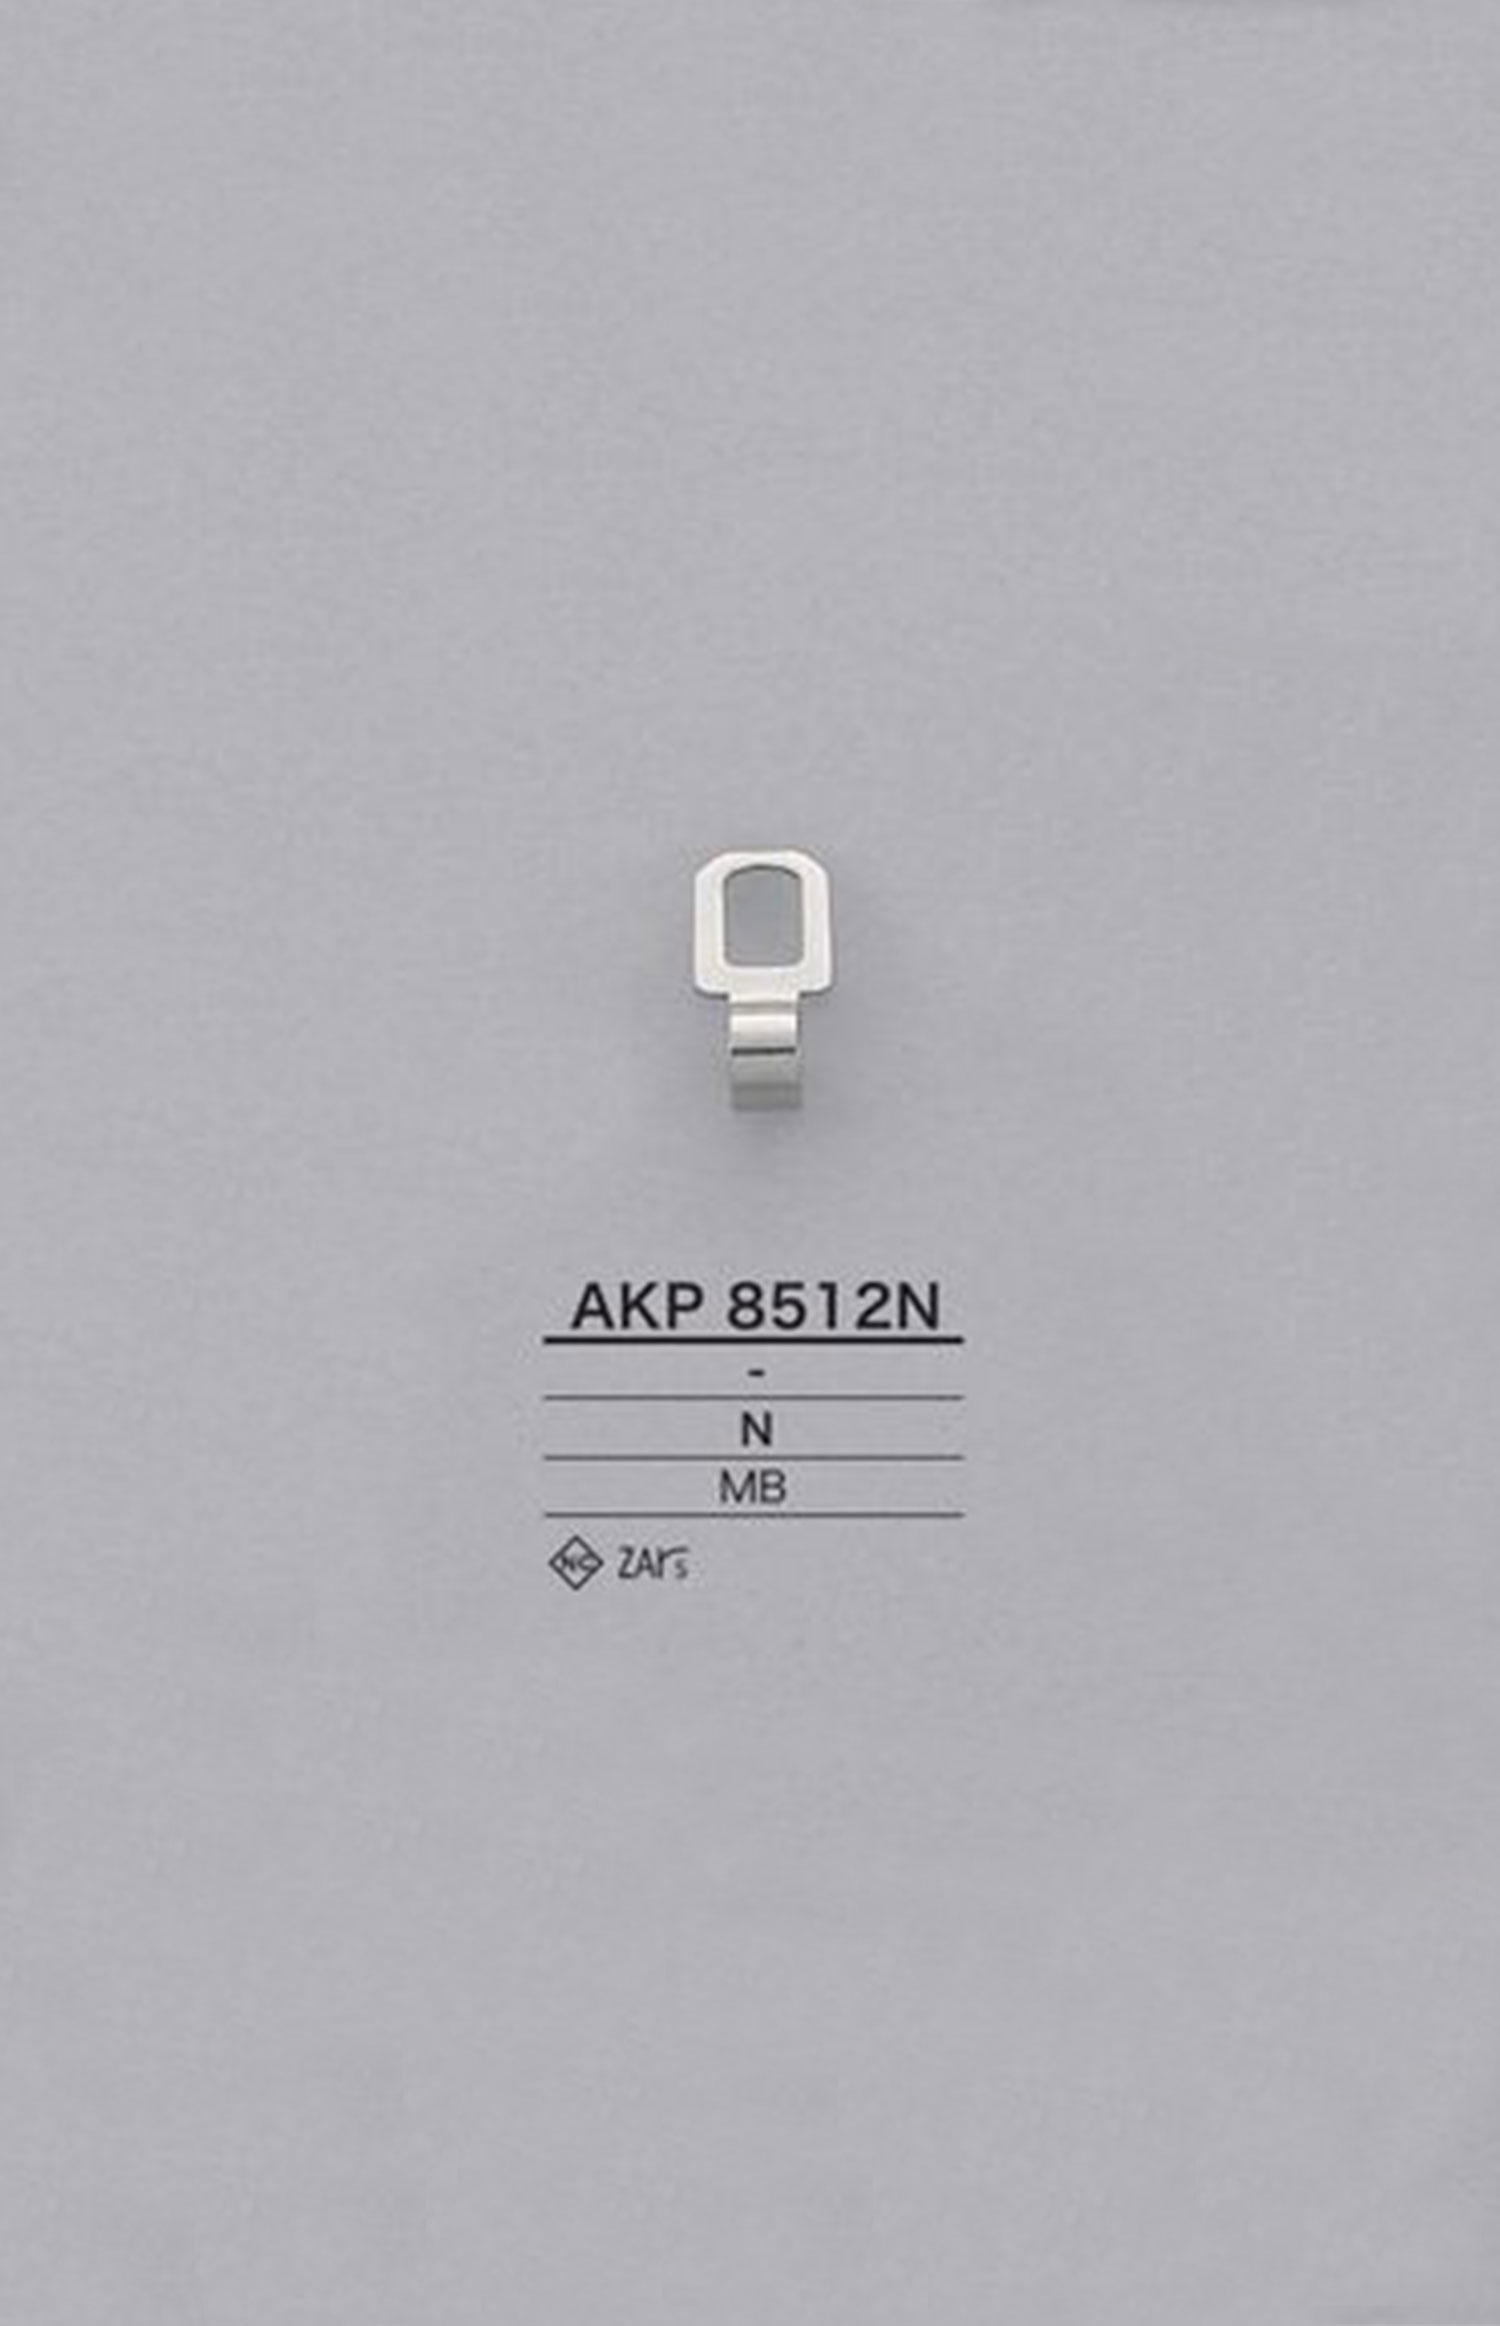 AKP8512N 황동 지퍼 포인트 (지퍼 슬라이더) IRIS